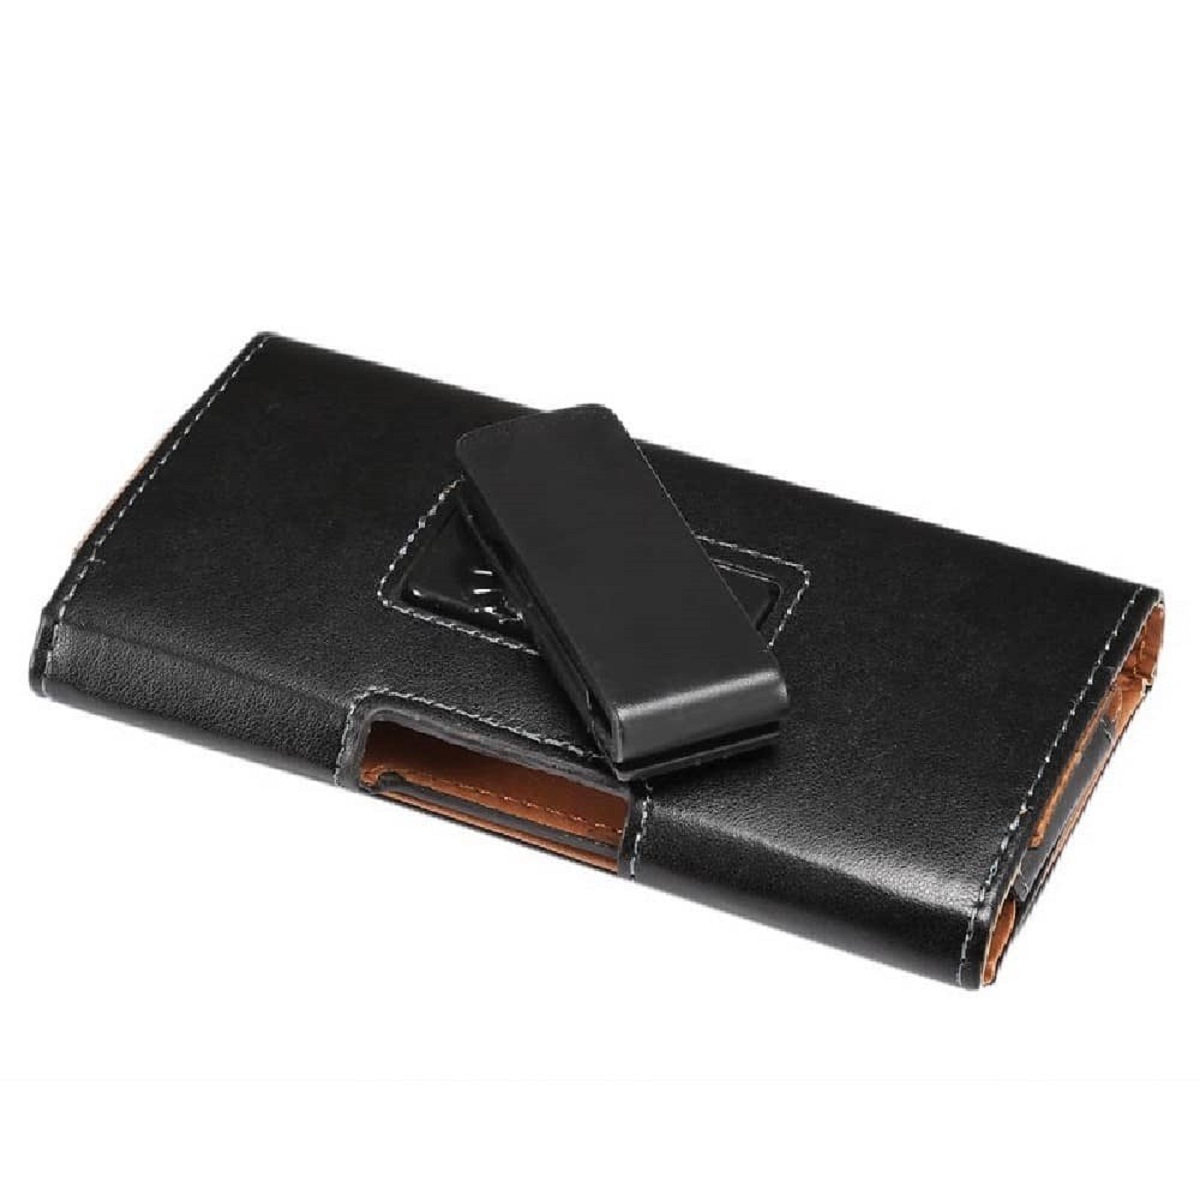 縮圖 1 - for Sony Xperia C4 dual (Sony Cosmos DS) Executive Holster Leather Case Belt ...